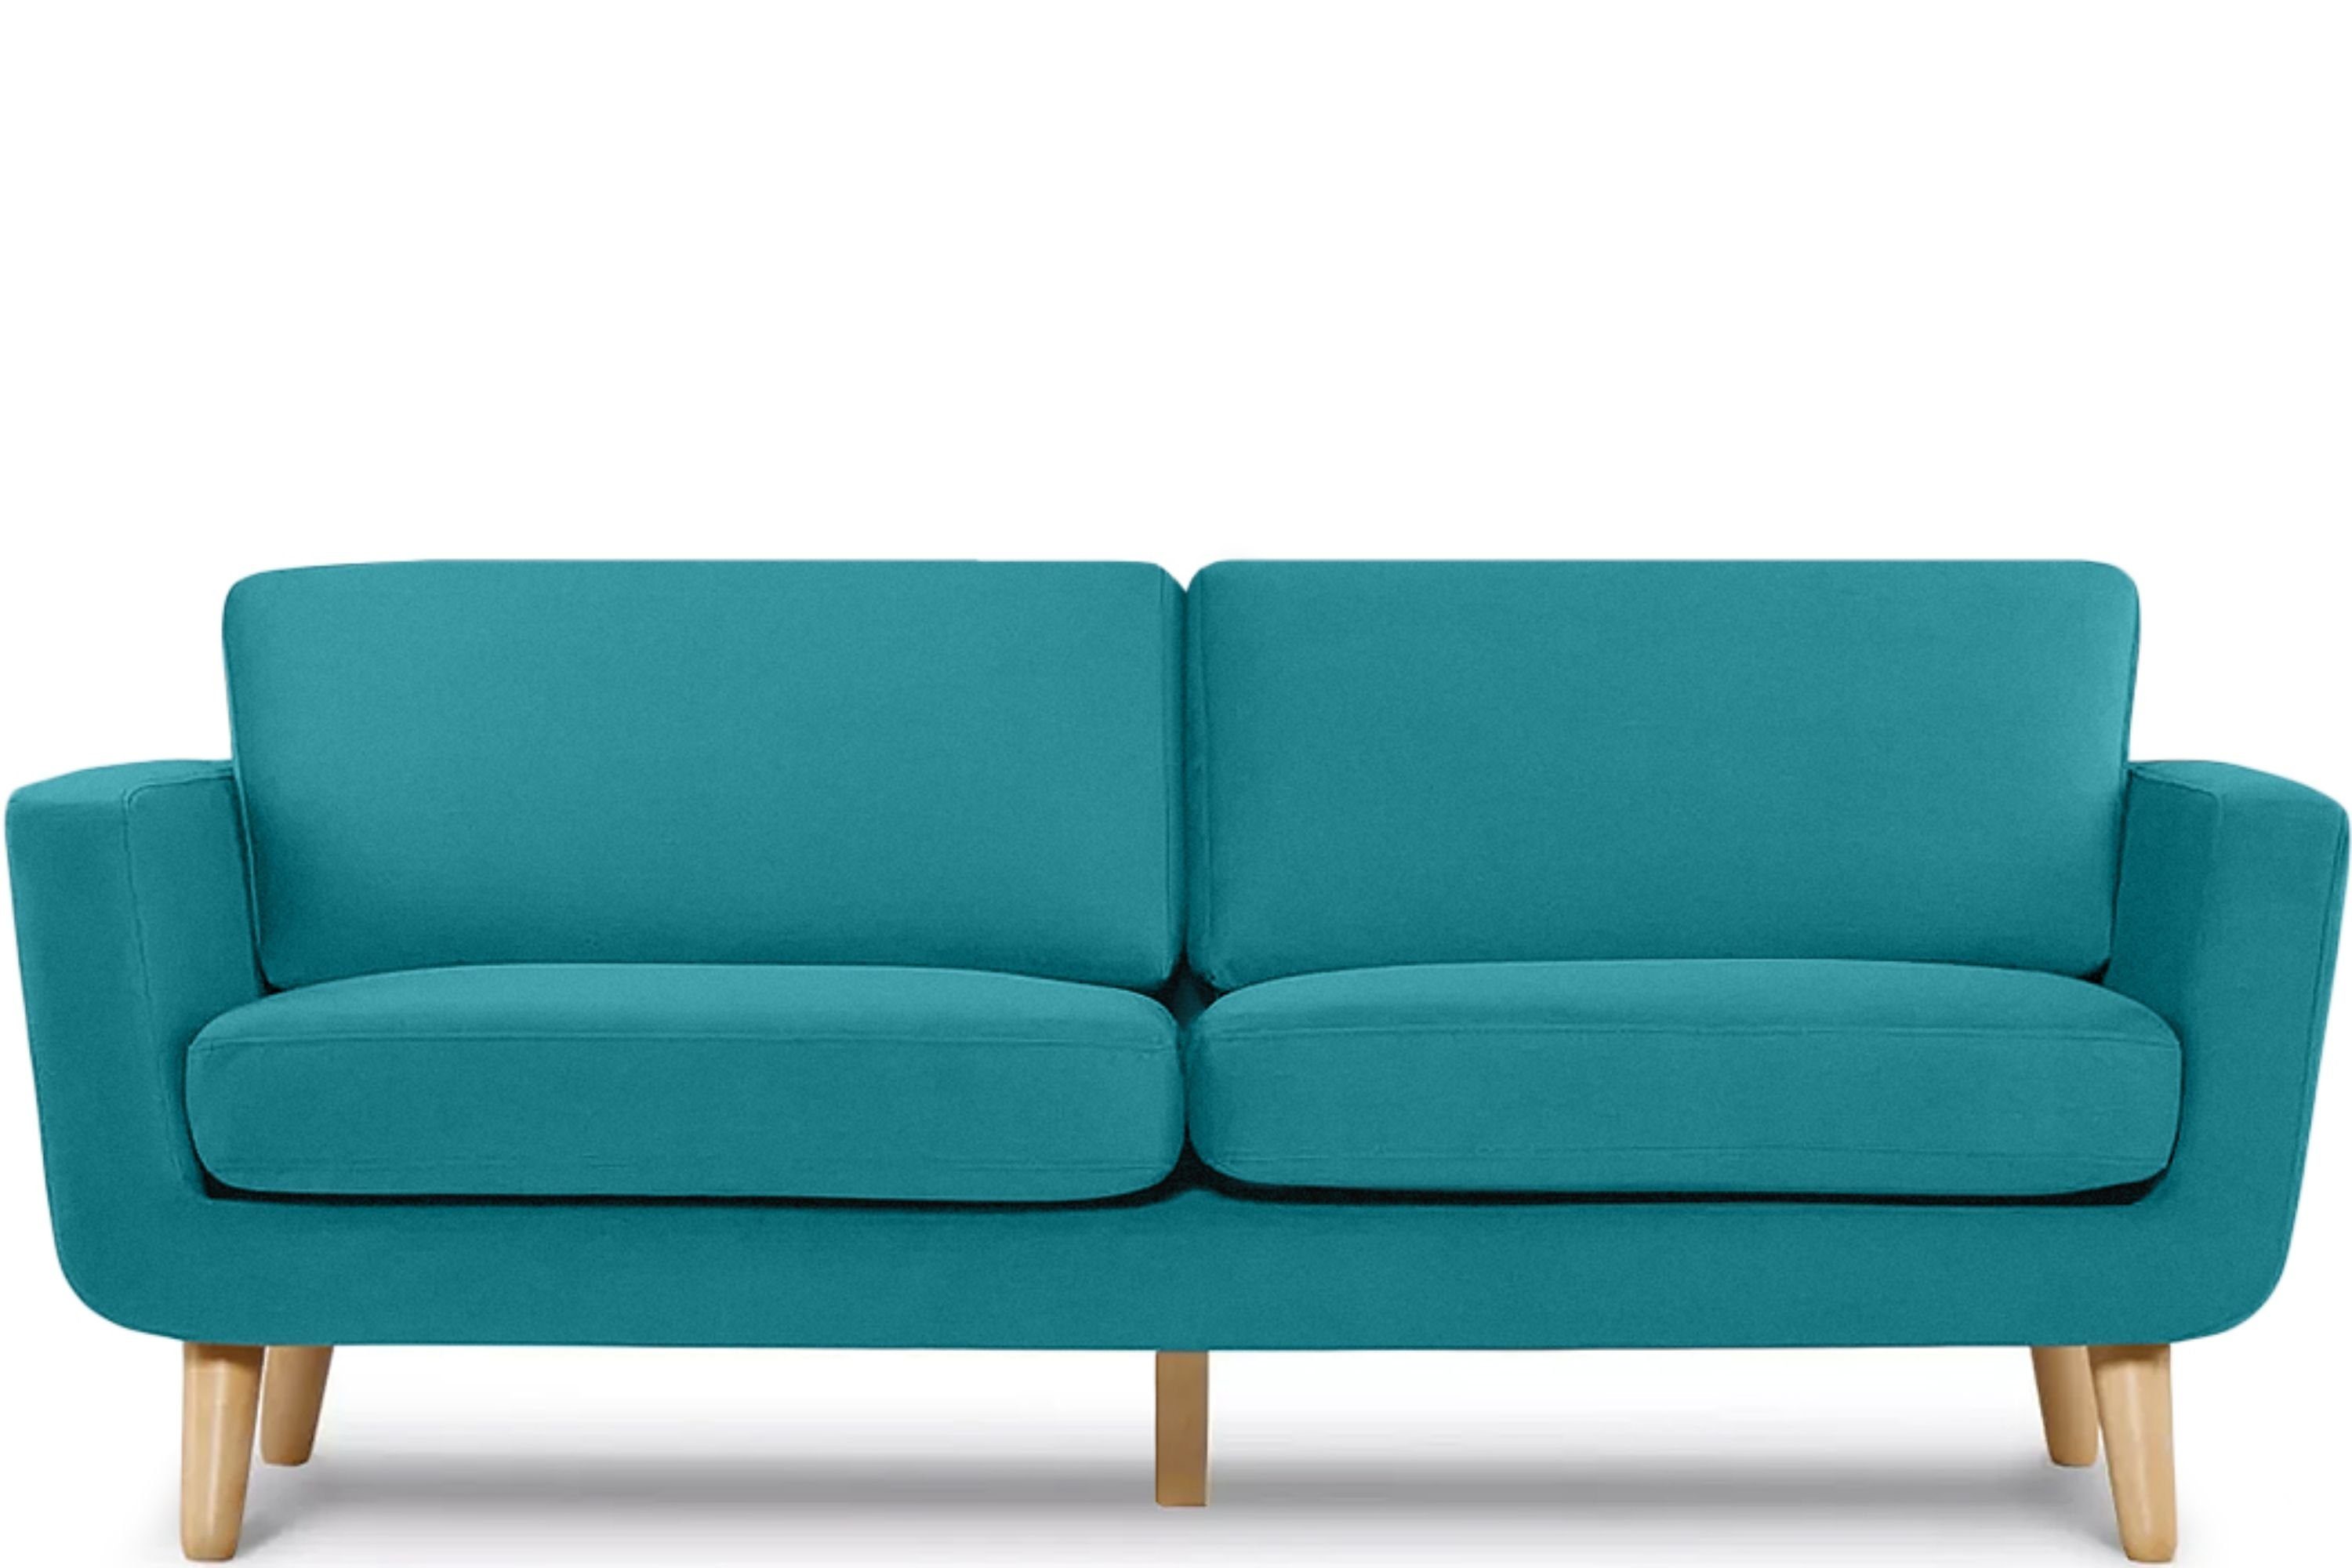 Massivholz 3-Sitzer Personen, Armlehnen, in türkis türkis | TAGIO Scandi-Stil, mit Sofa aus Konsimo Gestell Europe, Made 3